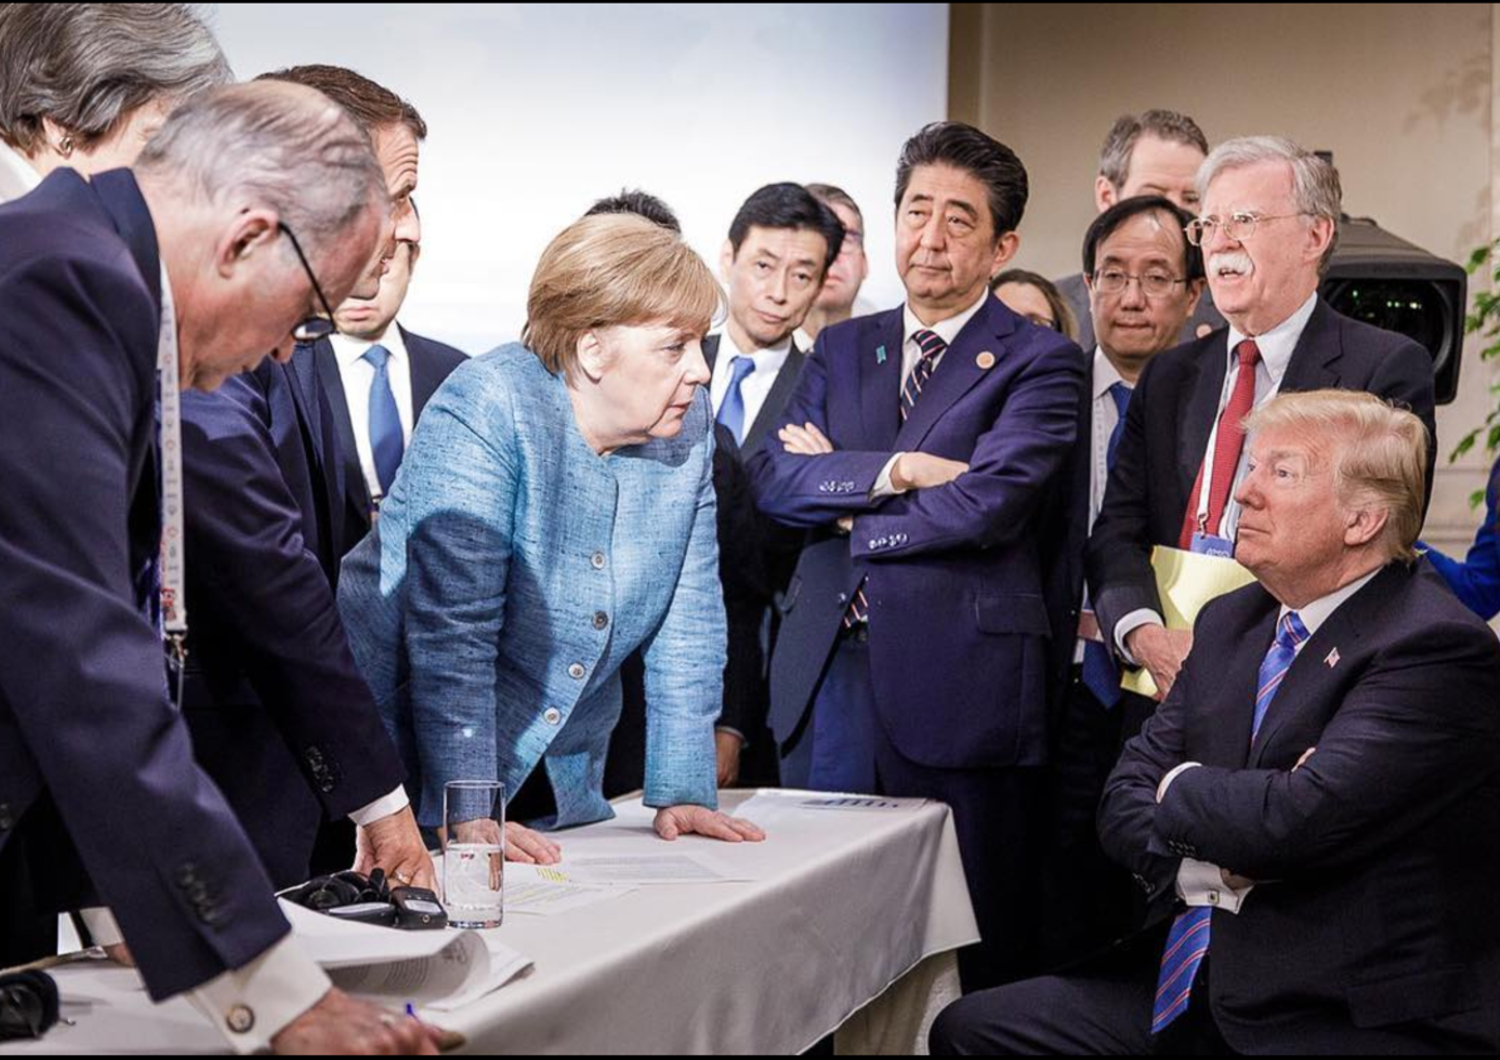 L'assedio dei leader a Trump durante il G7 in Canada